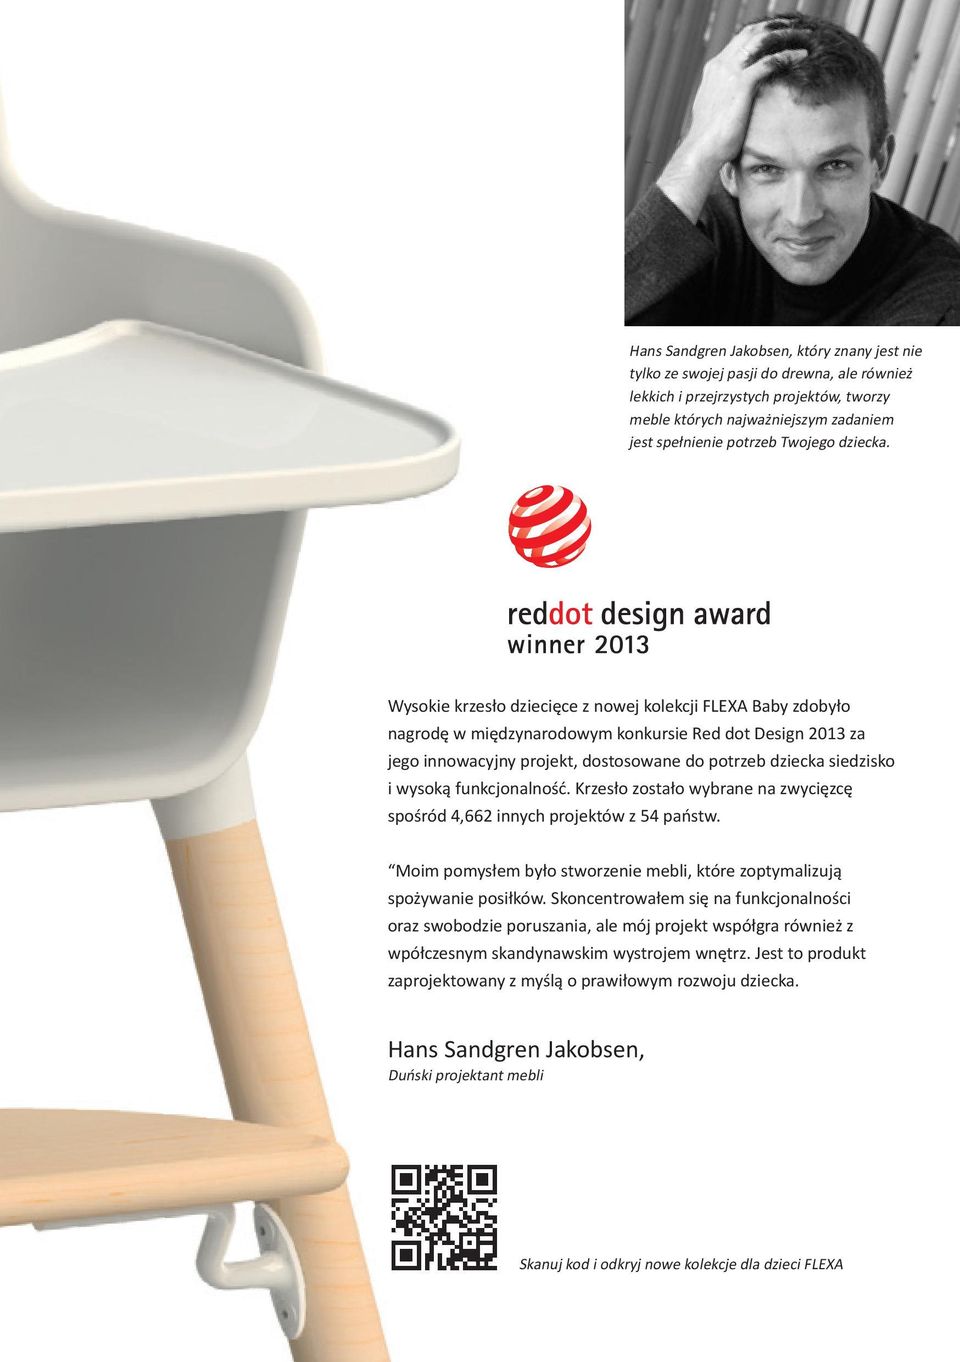 Wysokie krzesło dziecięce z nowej kolekcji FLEXA Baby zdobyło nagrodę w międzynarodowym konkursie Red dot Design 2013 za jego innowacyjny projekt, dostosowane do potrzeb dziecka siedzisko i wysoką